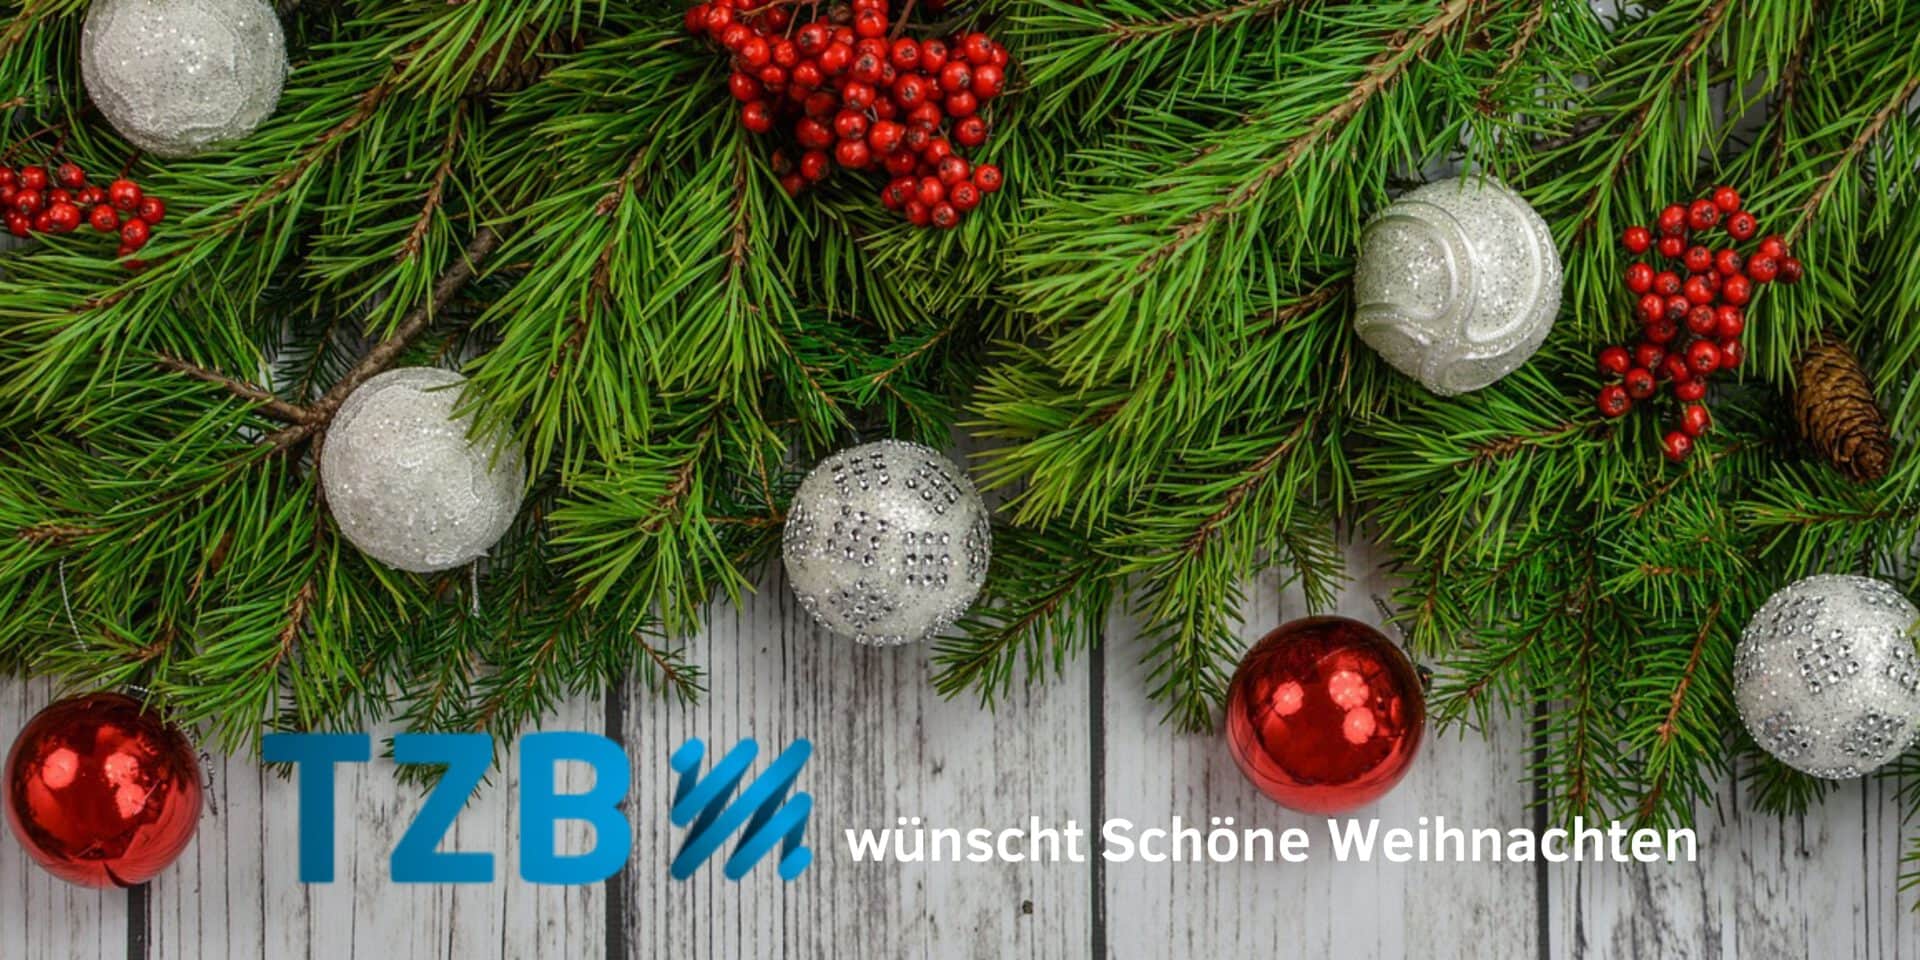 TZ Baden wünscht Schöne Weihnachten!